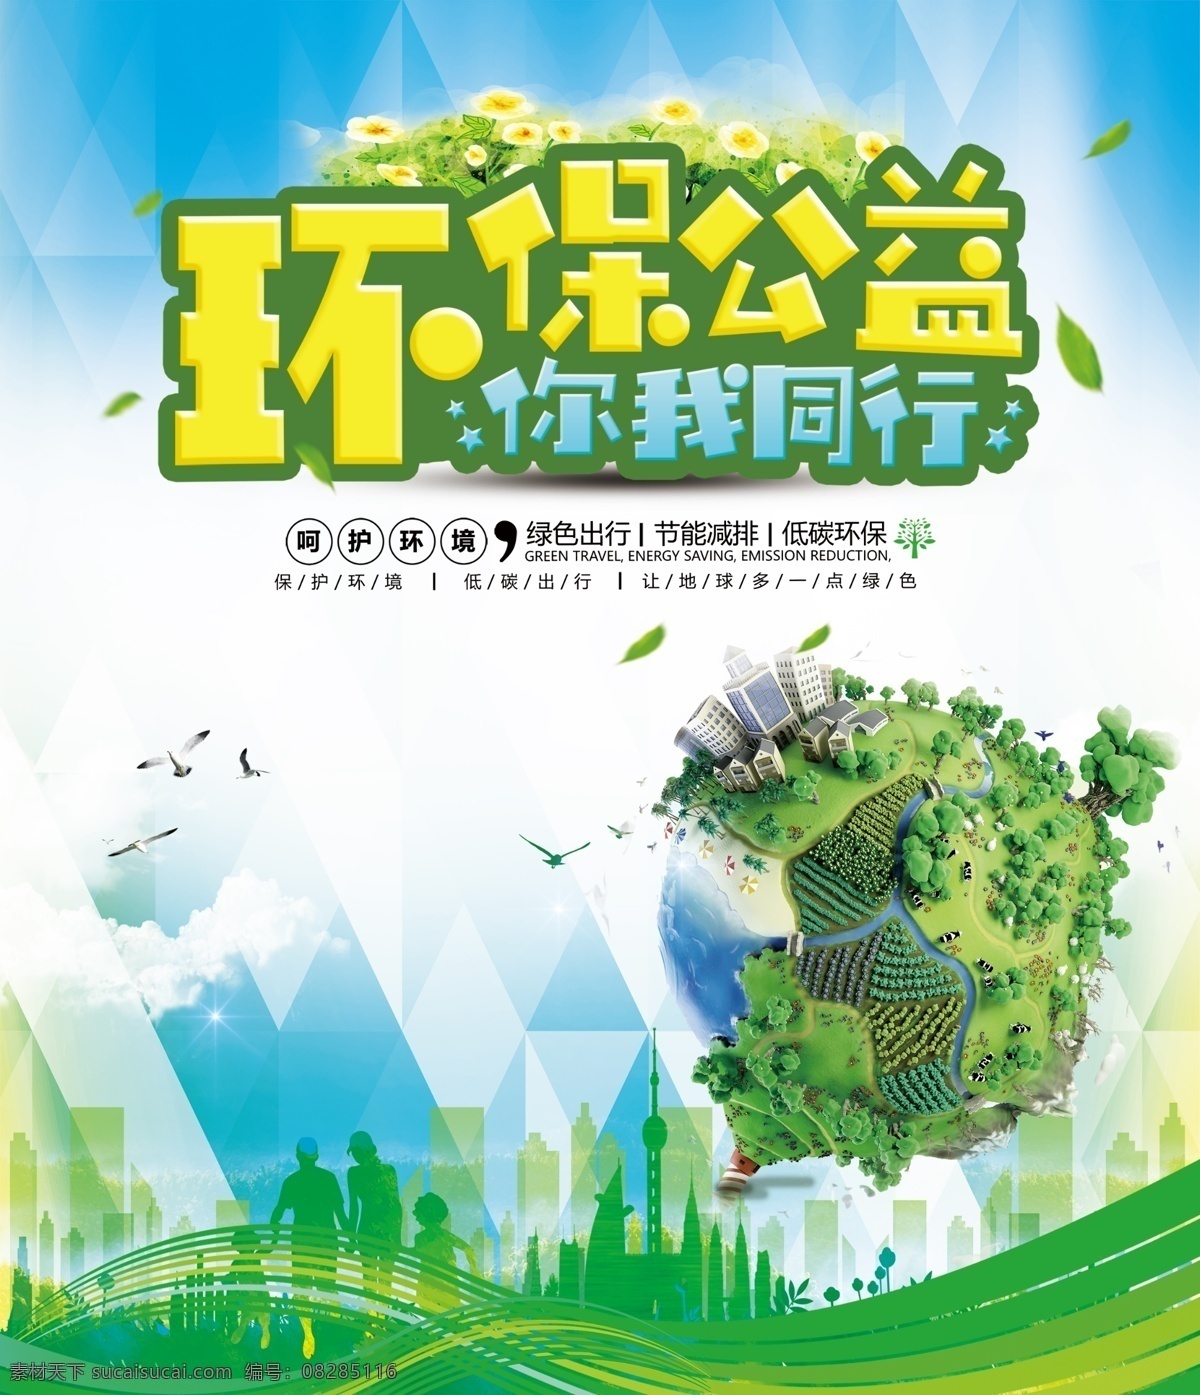 环保展板 环保 绿色 地球 公益 环境 节能 减排 低碳 文明 城市 展板 喷绘 海报